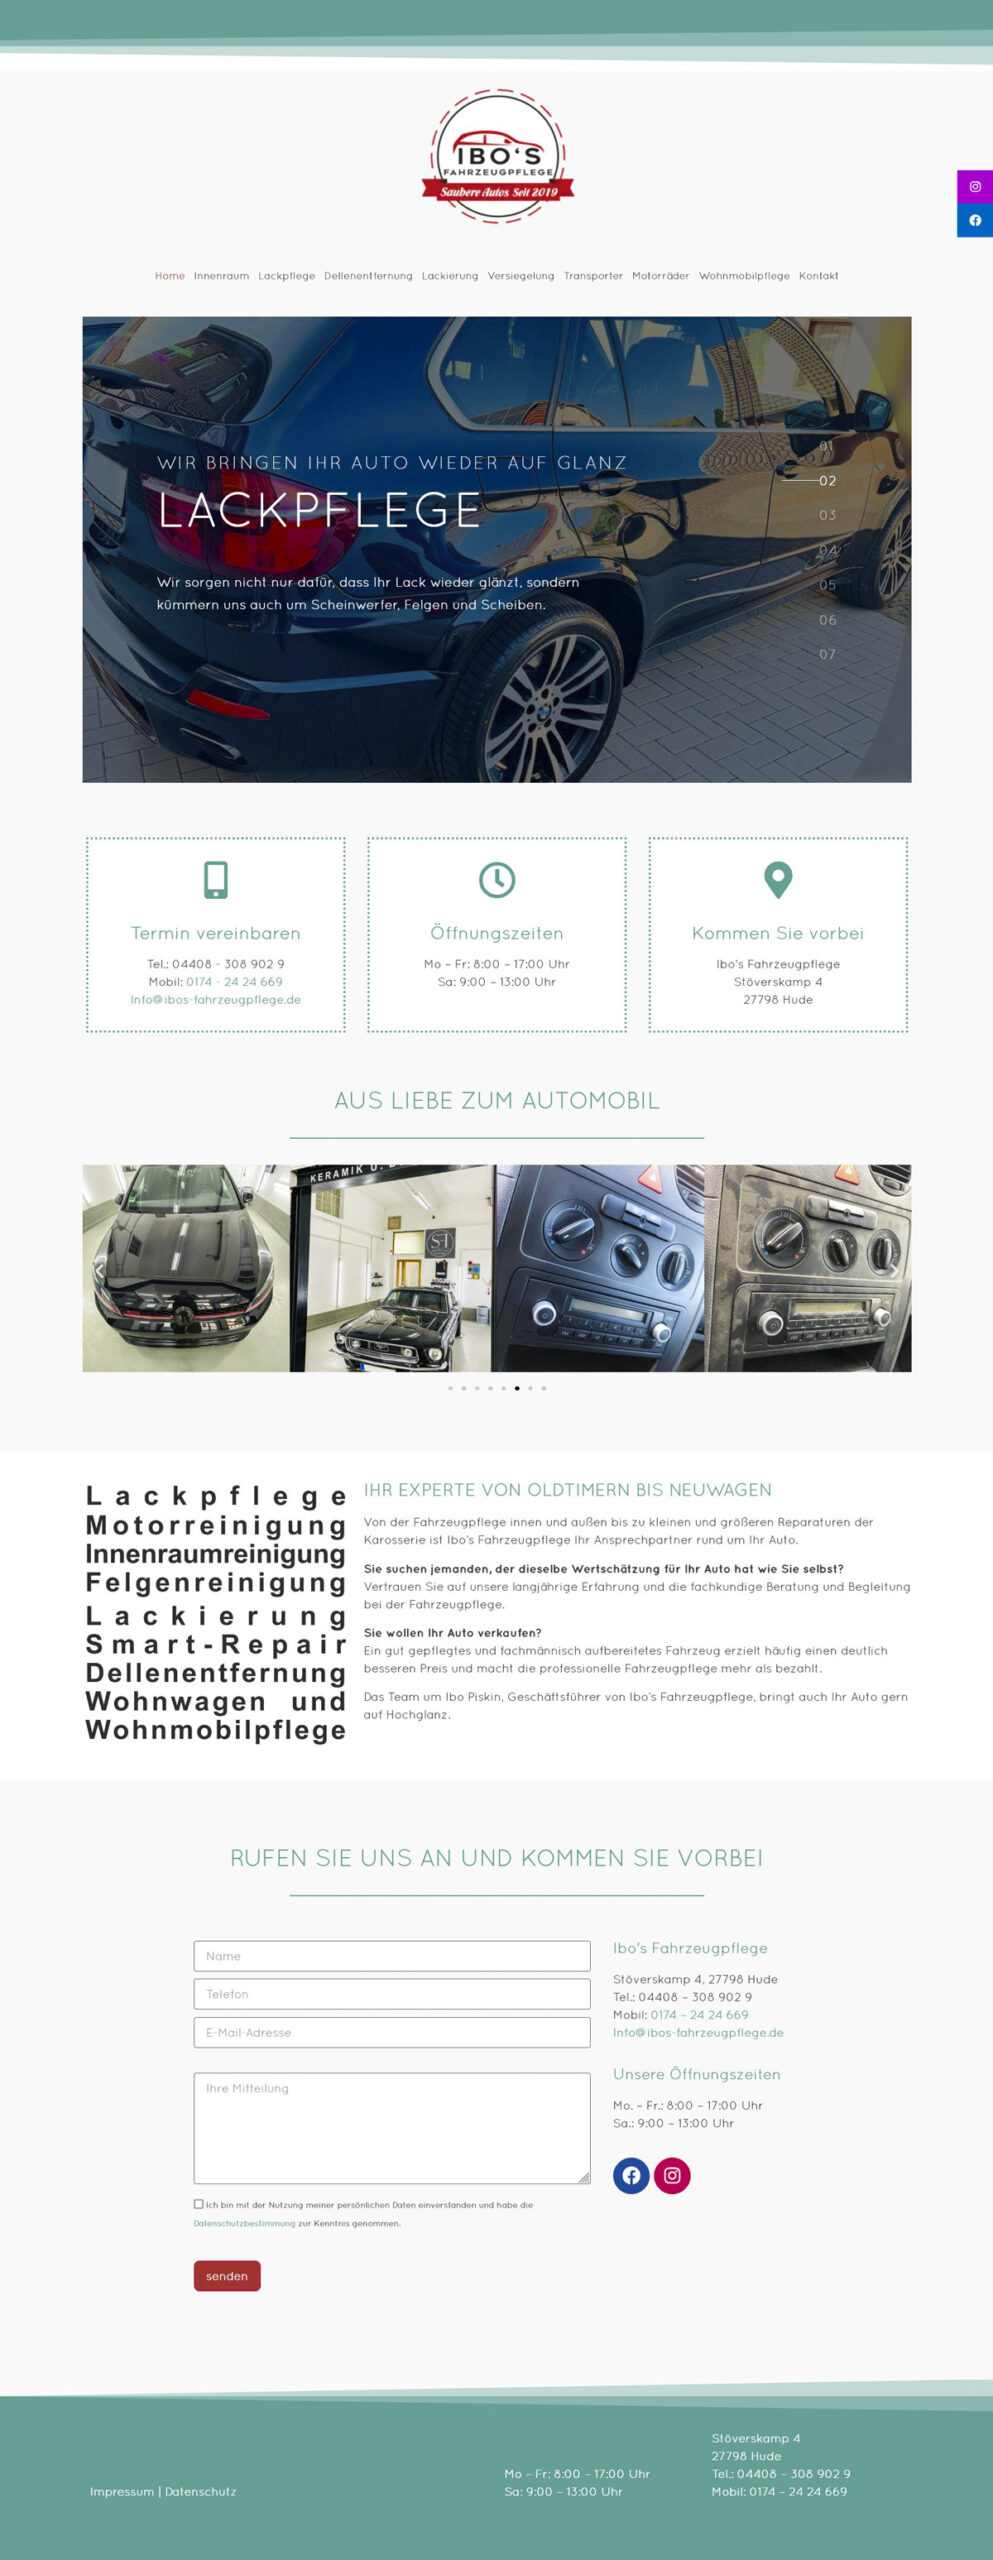 Webdesign der neuen Homepage für Ibo's Fahrzeugpflege in Hude